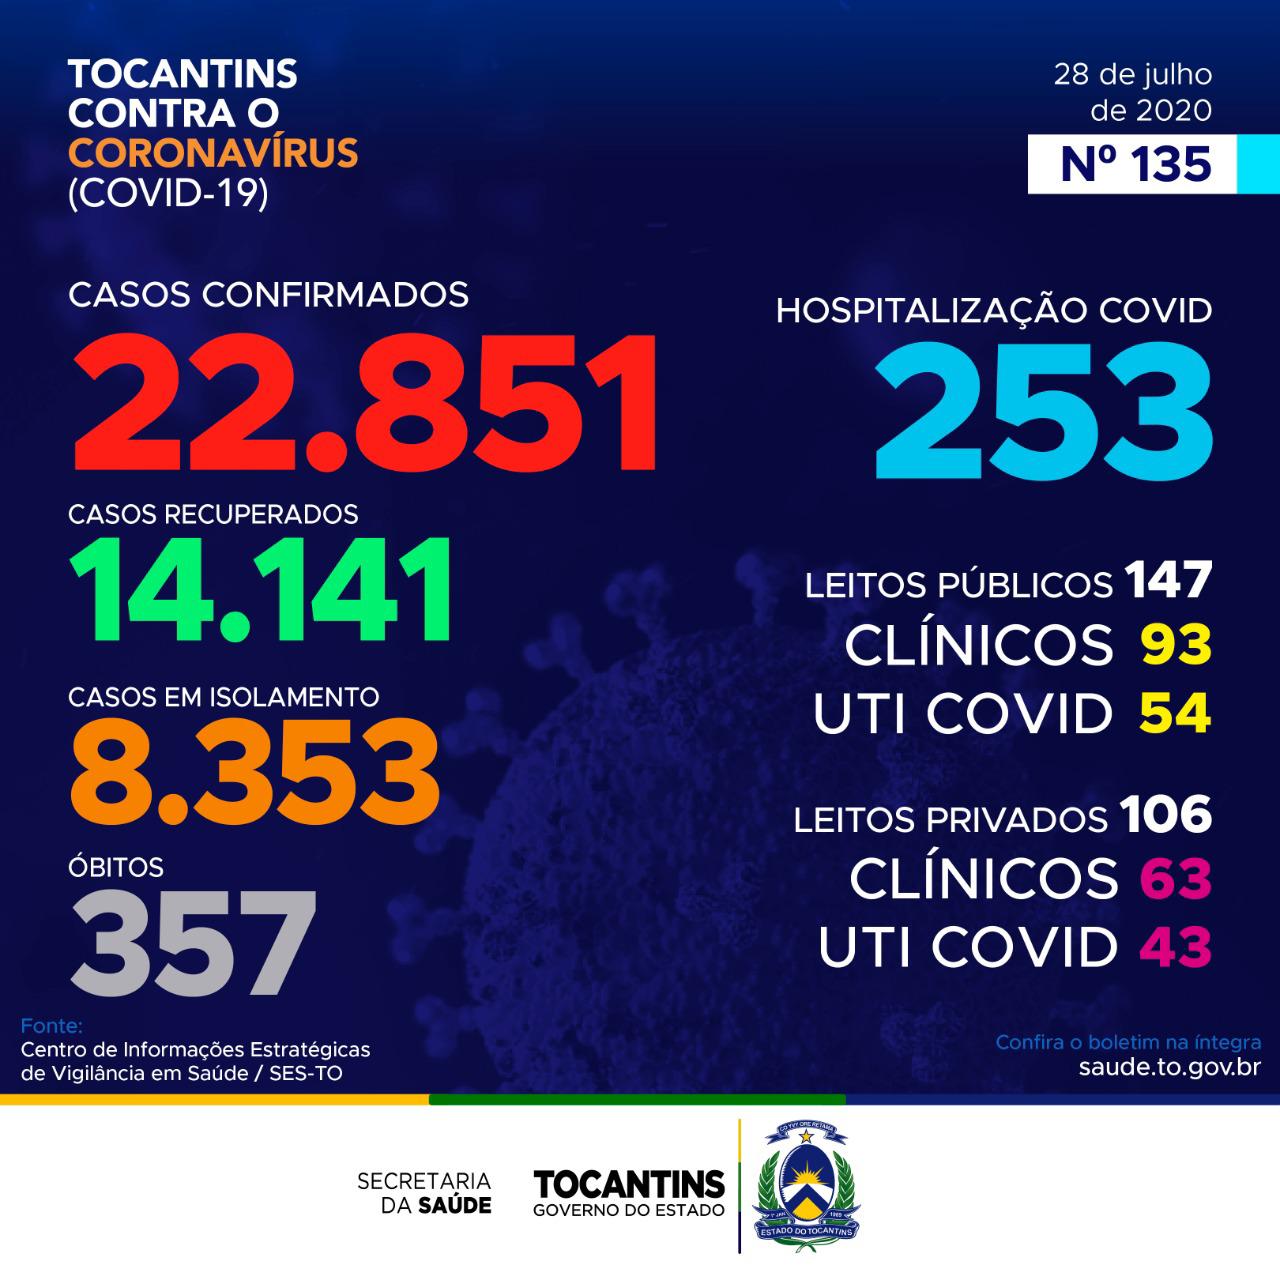 Coronavírus: Hoje o Tocantins contabiliza quase 750 casos, 46% das confirmações está entre indivíduos de 20 a 39 anos